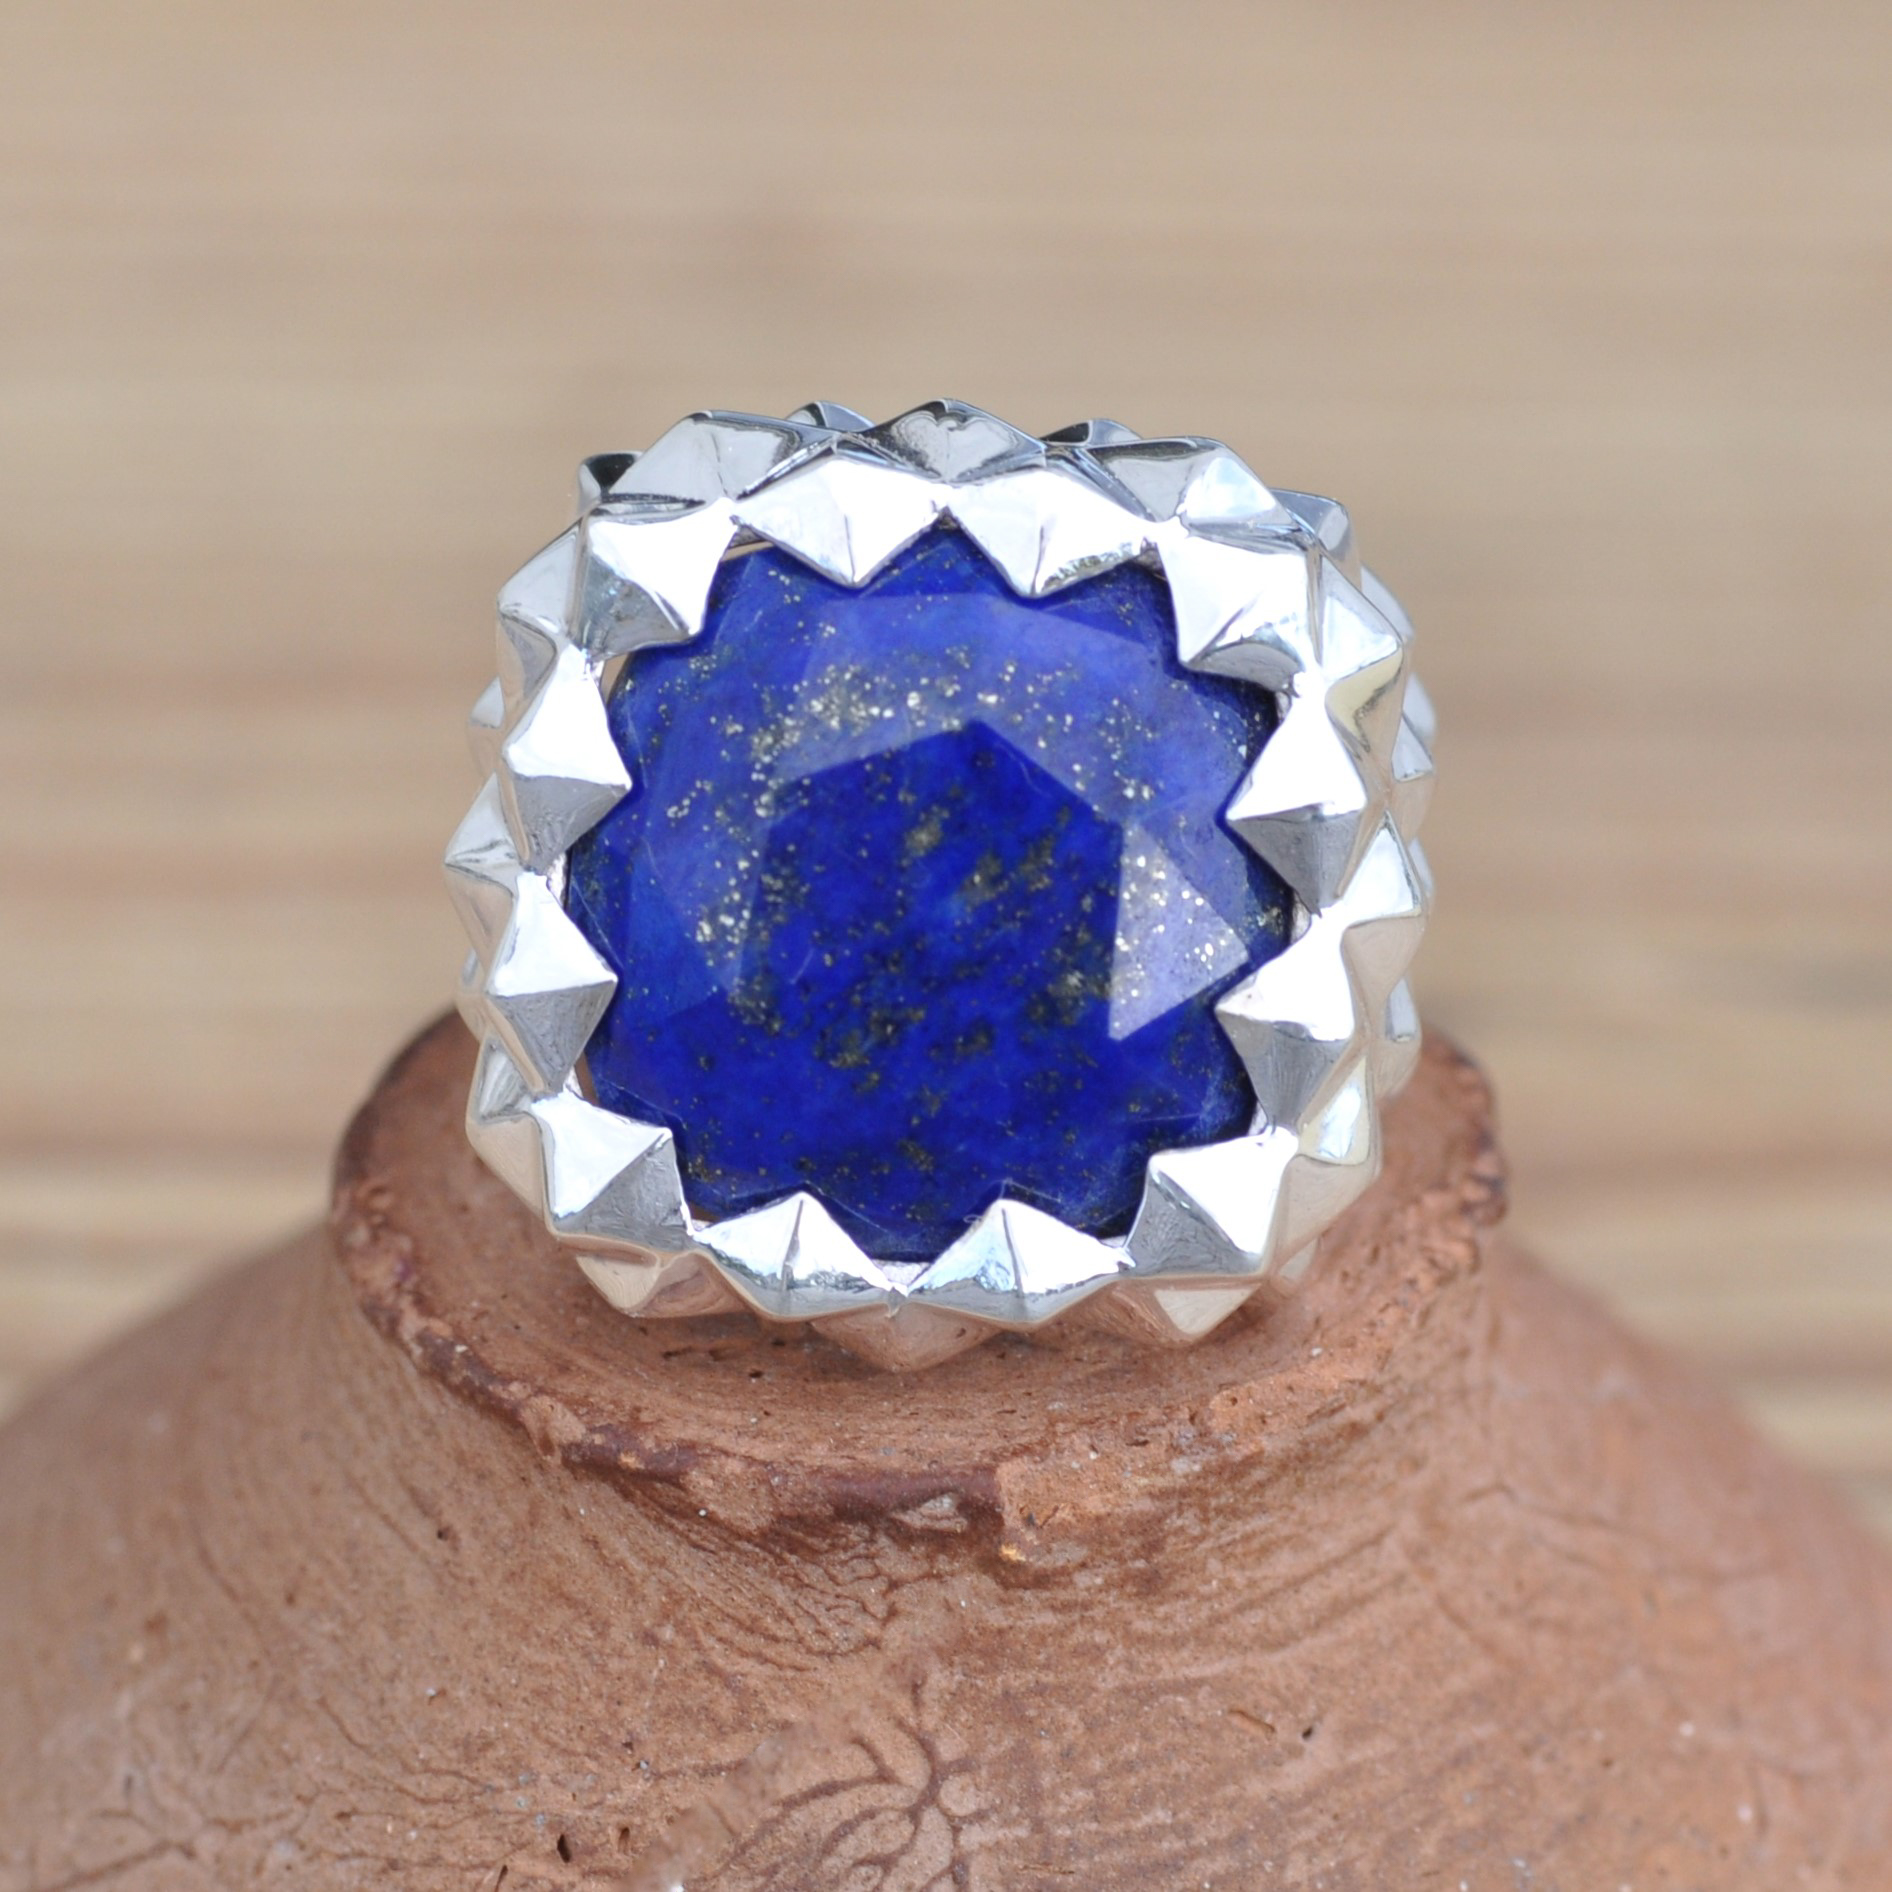 NEW ! Grosse chevalière pointes argent et pierre Lapis lazuli (bleu)